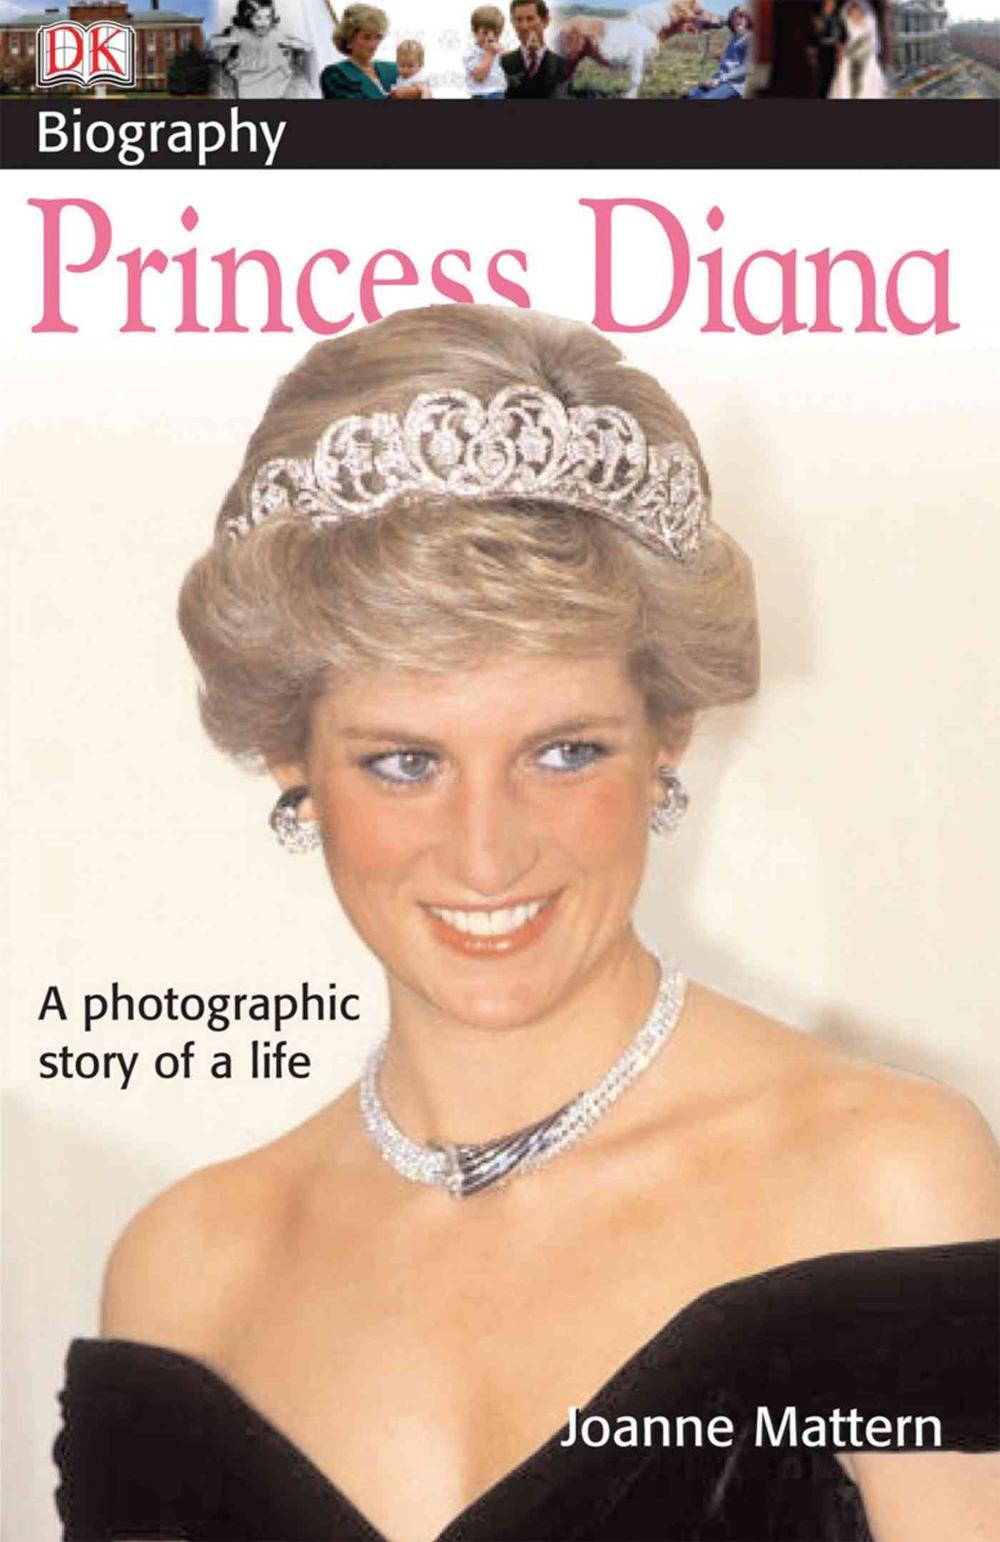 Princess Diana By Joanne Mattern Paperback 9780756616144 Buy Online